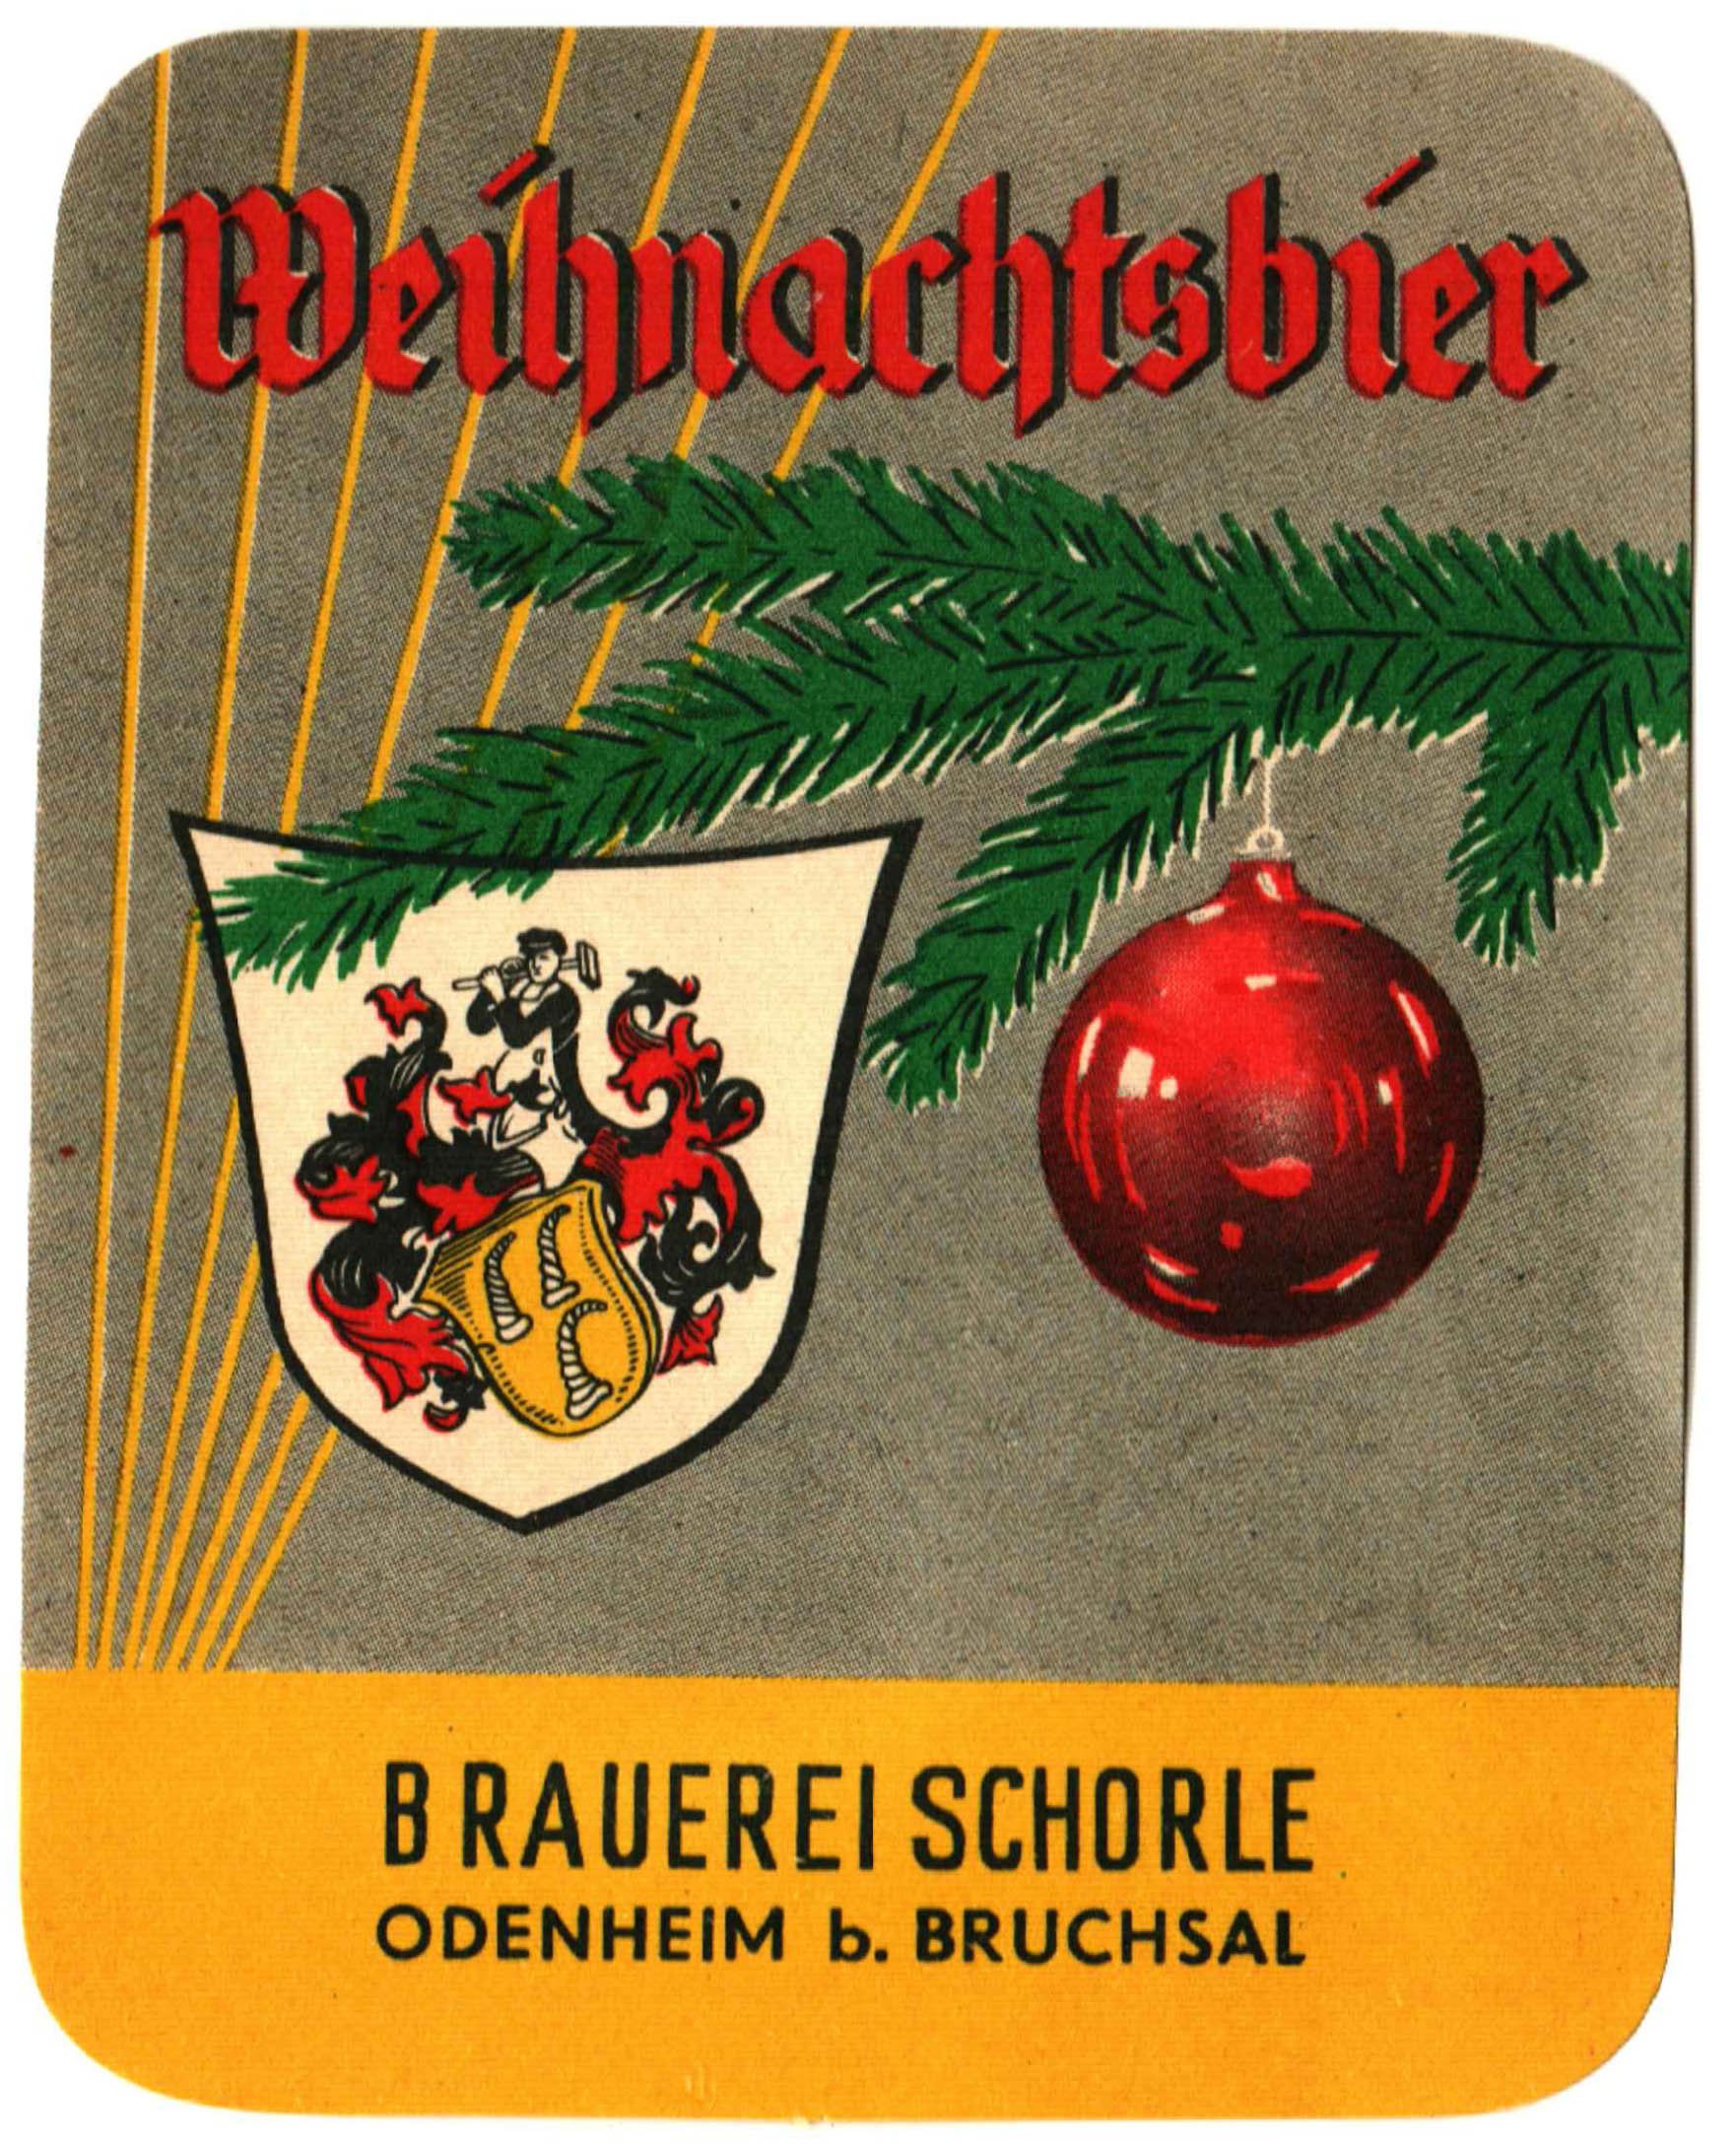 Bieretikett für Weihnachtsbier der Brauerei Schorle in Odenheim, um 1967 (ARCHIV DEUTSCHER BIERETIKETTEN CC BY-NC-SA)